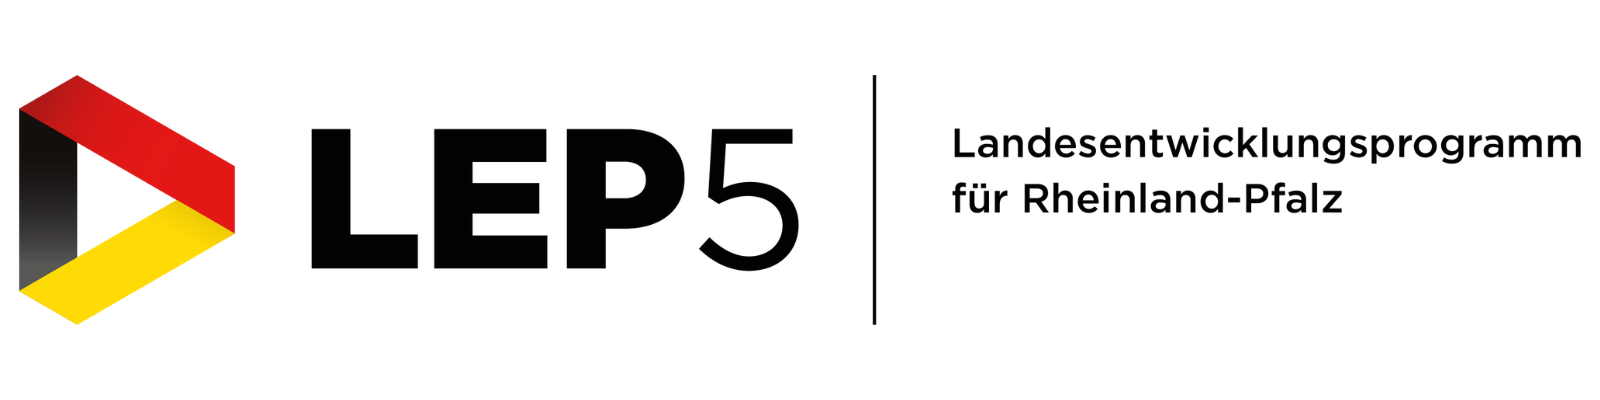 Logo von LEP 5. Links ein dreidimensionaler Play-Button. Rechts daneben steht in Grußbuchstaben "LEP5" - Landesentwicklungsprogramm für Rheinland-Pfalz.